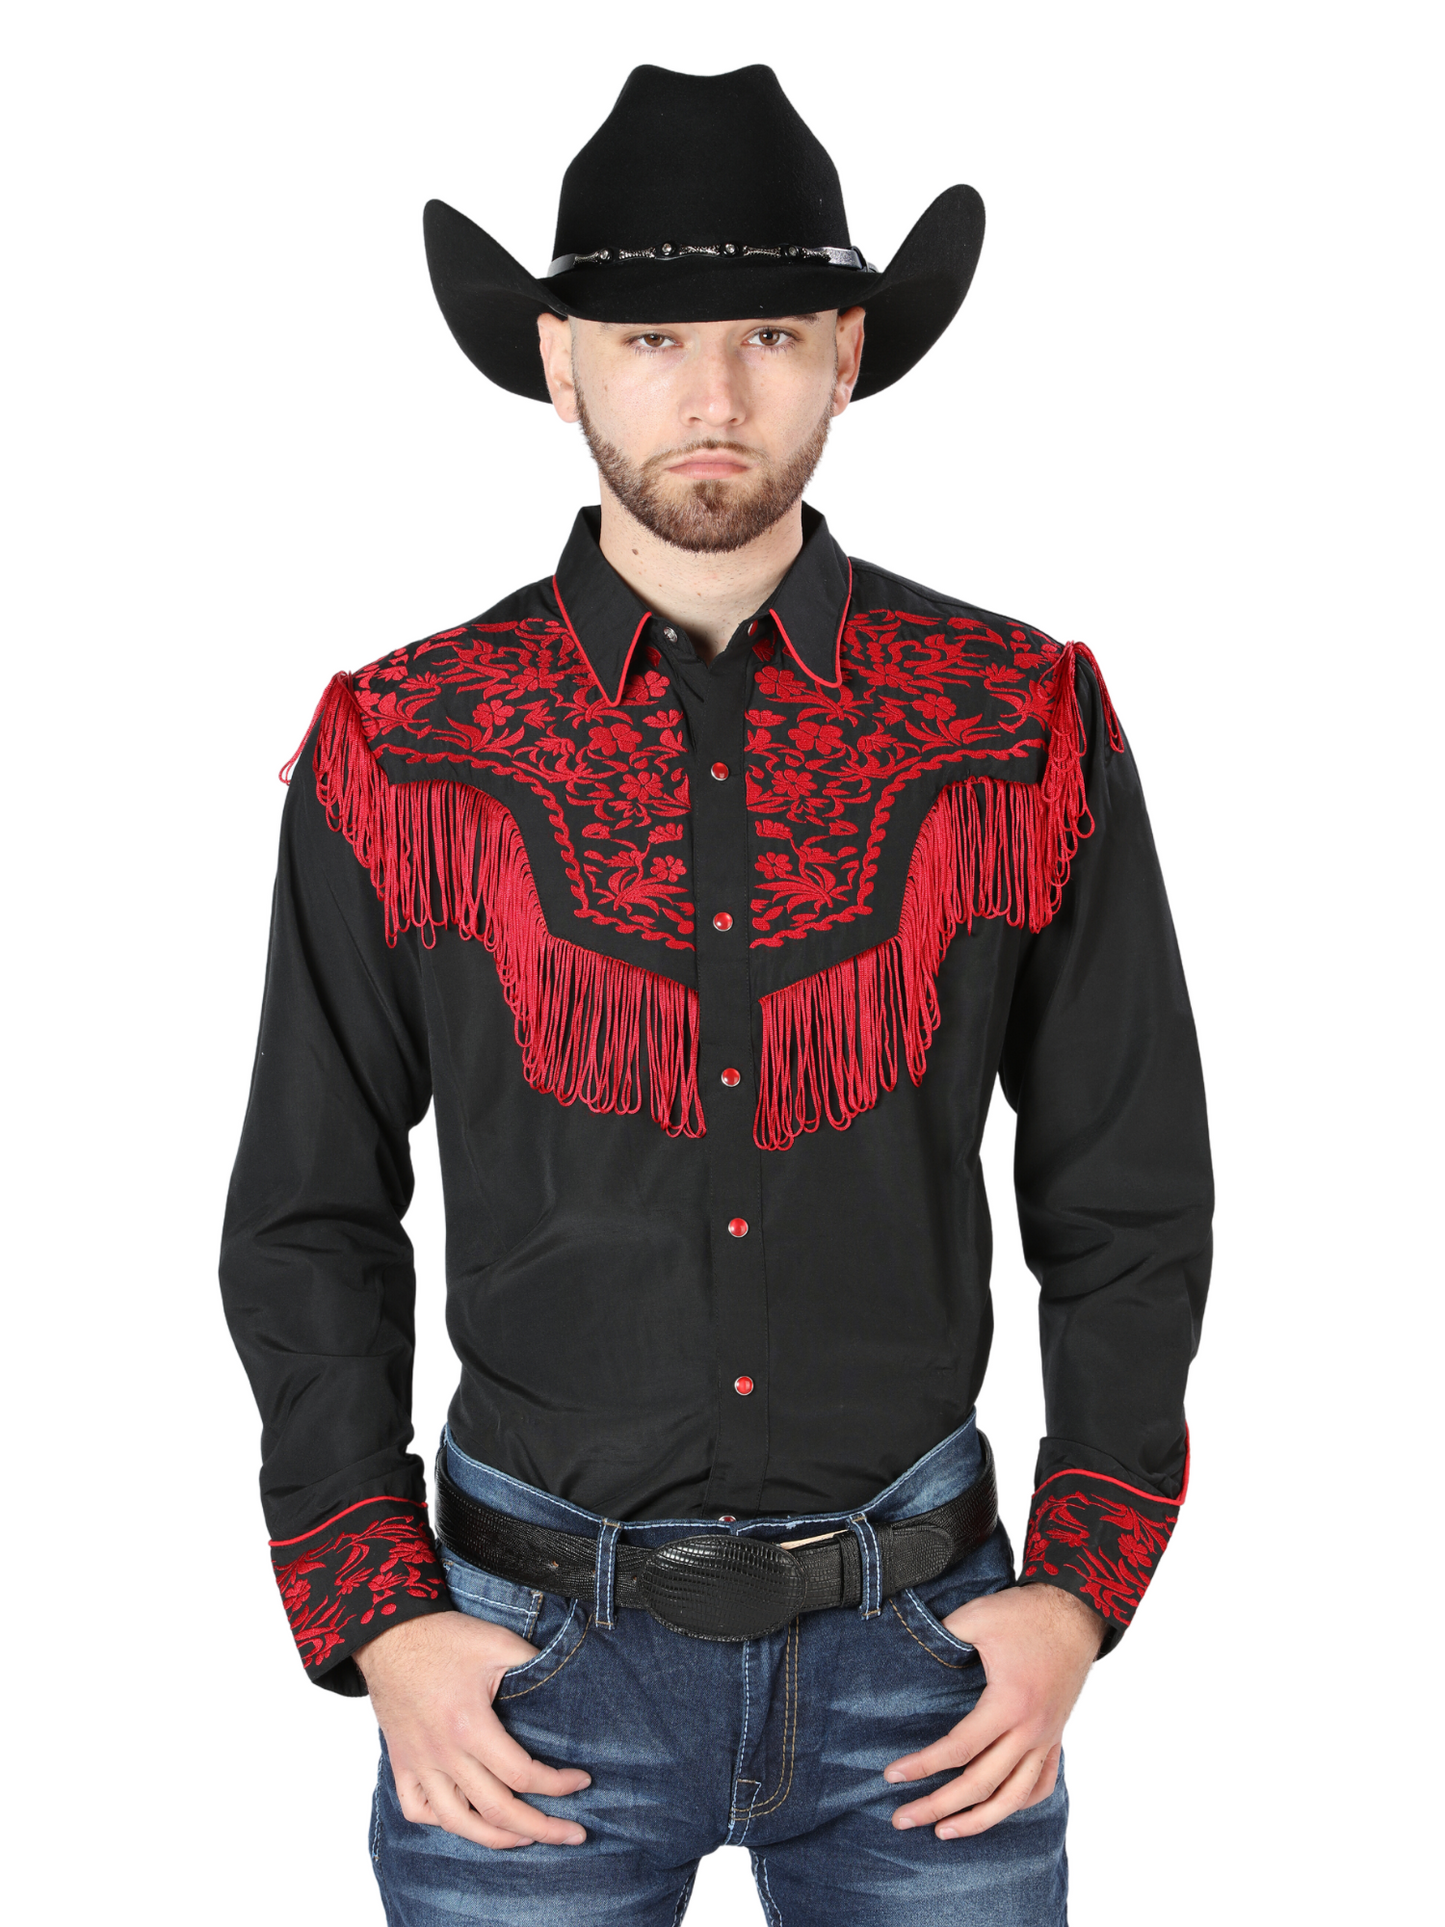 Black Long Sleeve Embroidered Denim Shirt for Men 'El Señor de los Cielos' - ID: 126726 Western Shirt El Señor de los Cielos Black